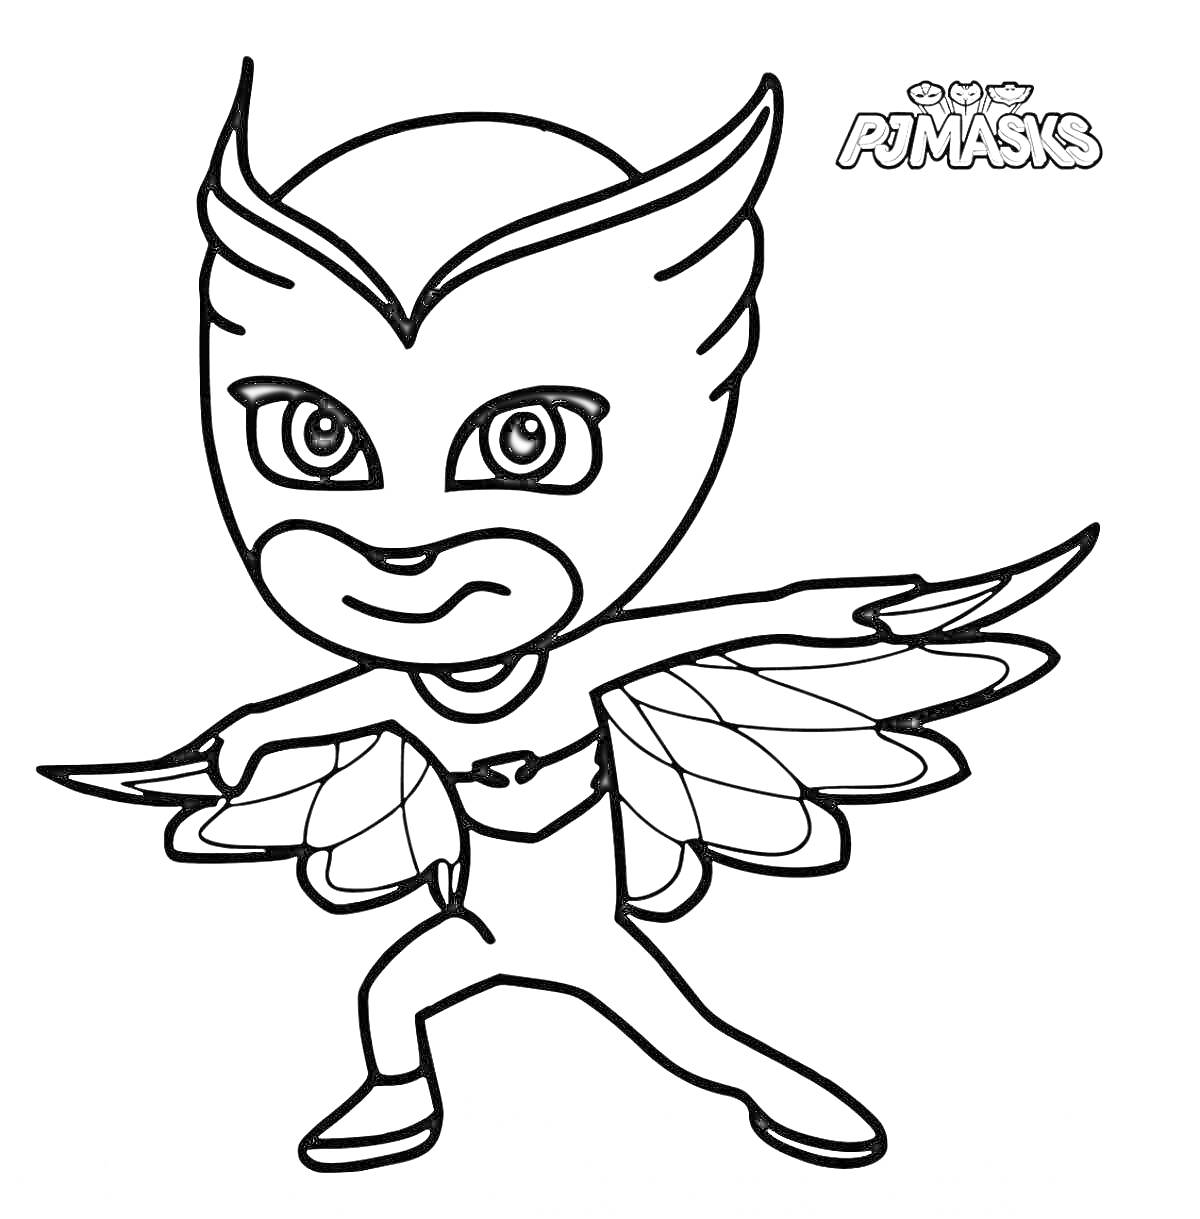 Раскраска Герой в маске с крыльями, герой в боевой стойке, логотип PJ Masks в правом верхнем углу